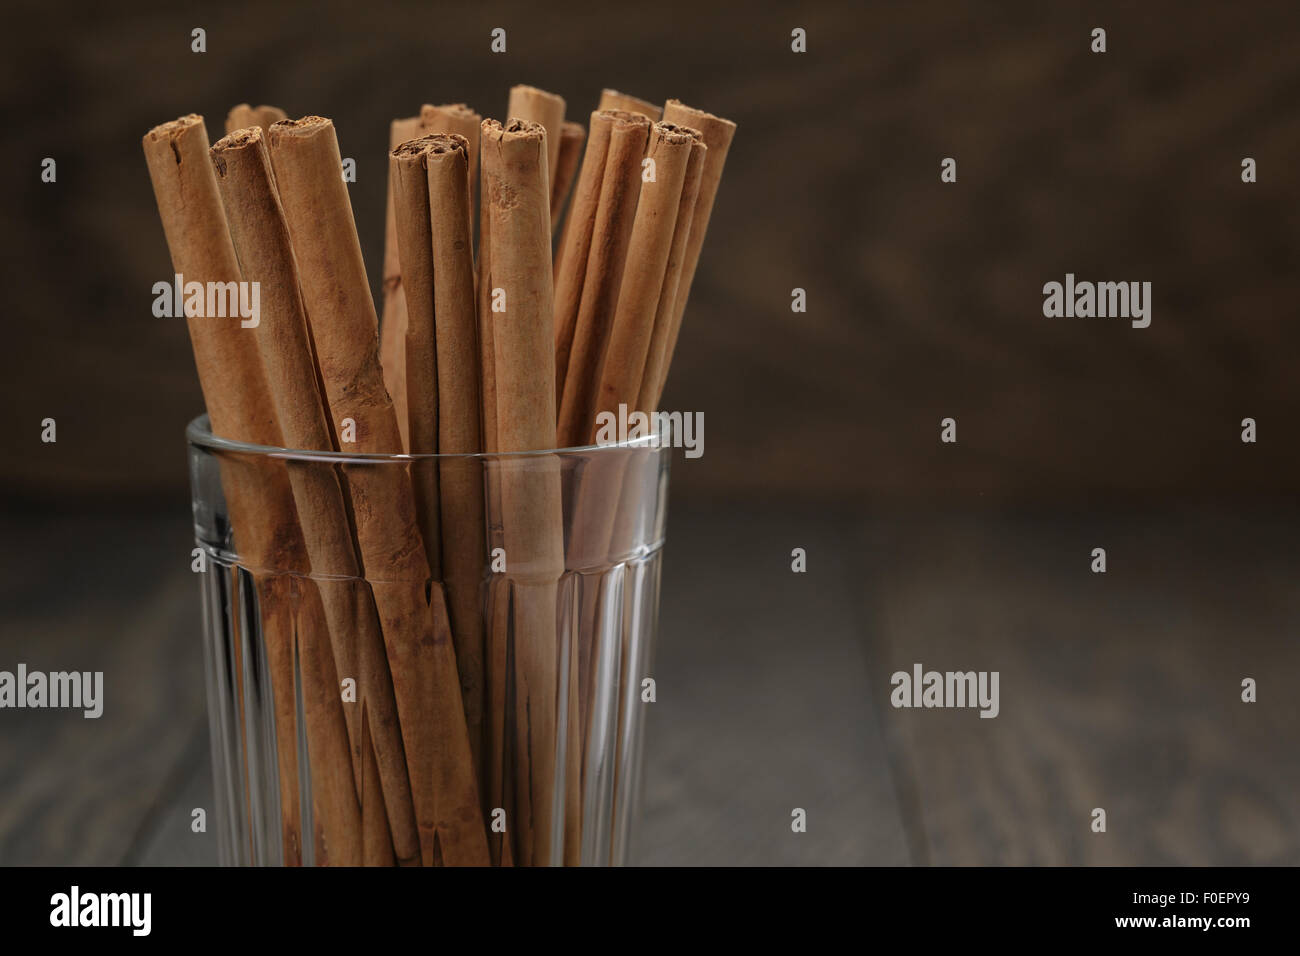 Vrai Les bâtons de cannelle dans le verre sur la table en bois, sélective Banque D'Images